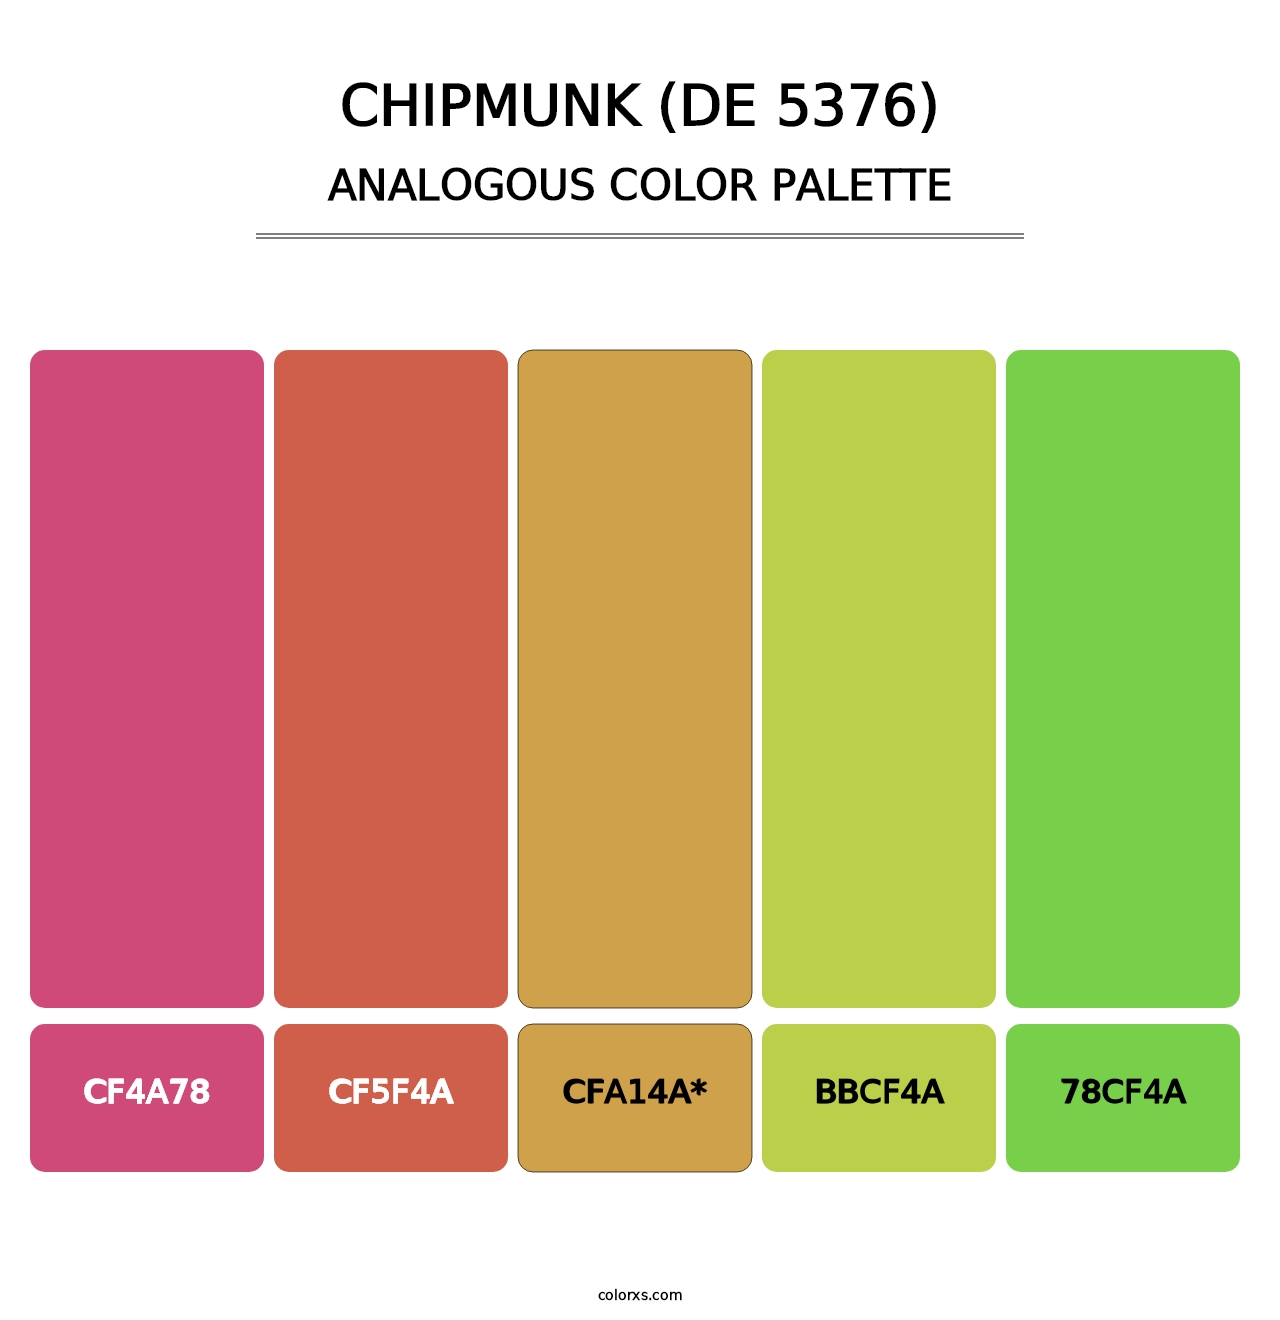 Chipmunk (DE 5376) - Analogous Color Palette